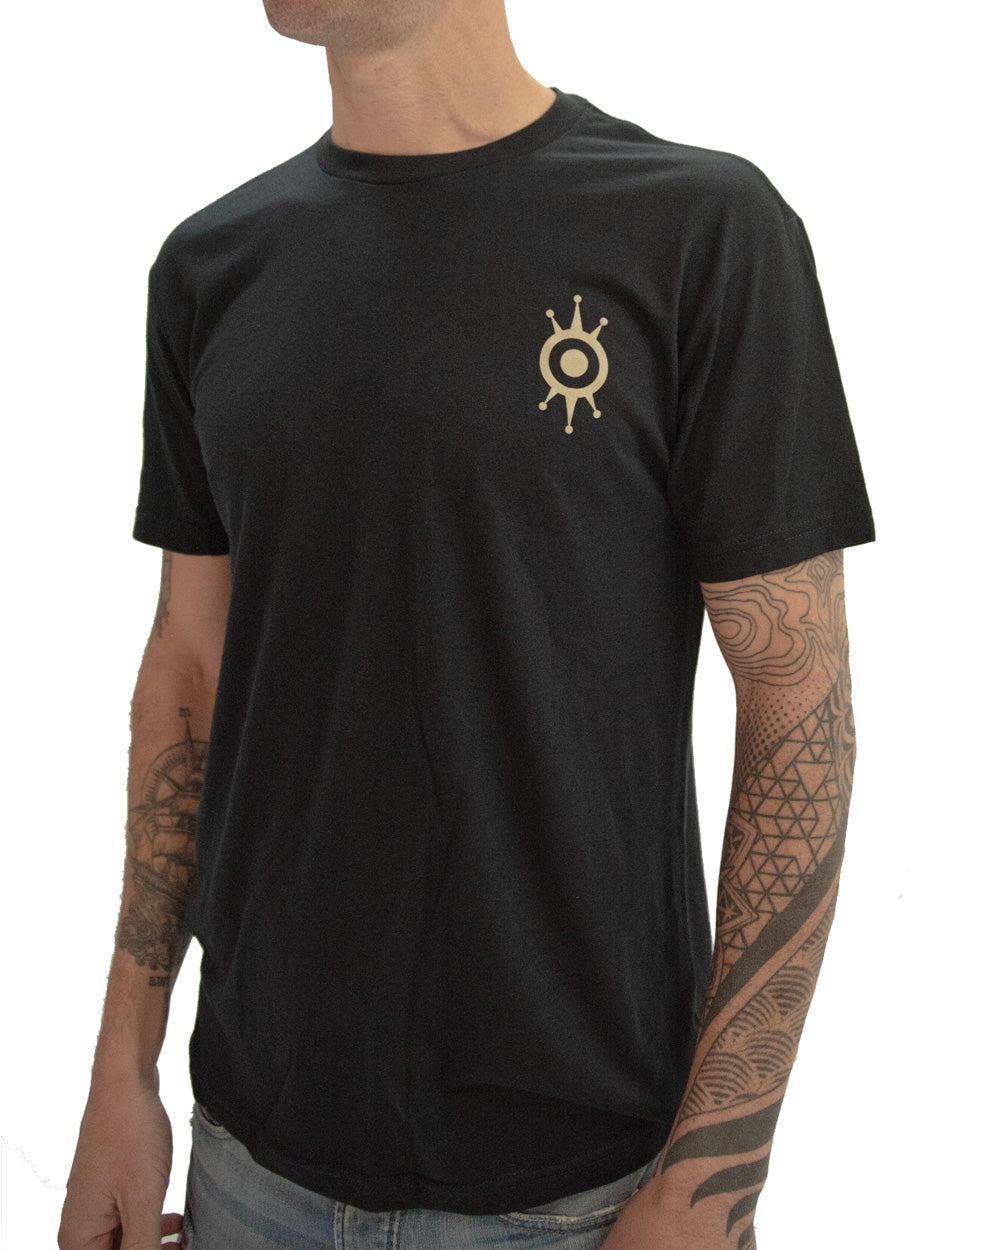 Alchemy Floyd Hill T-Shirt - Black